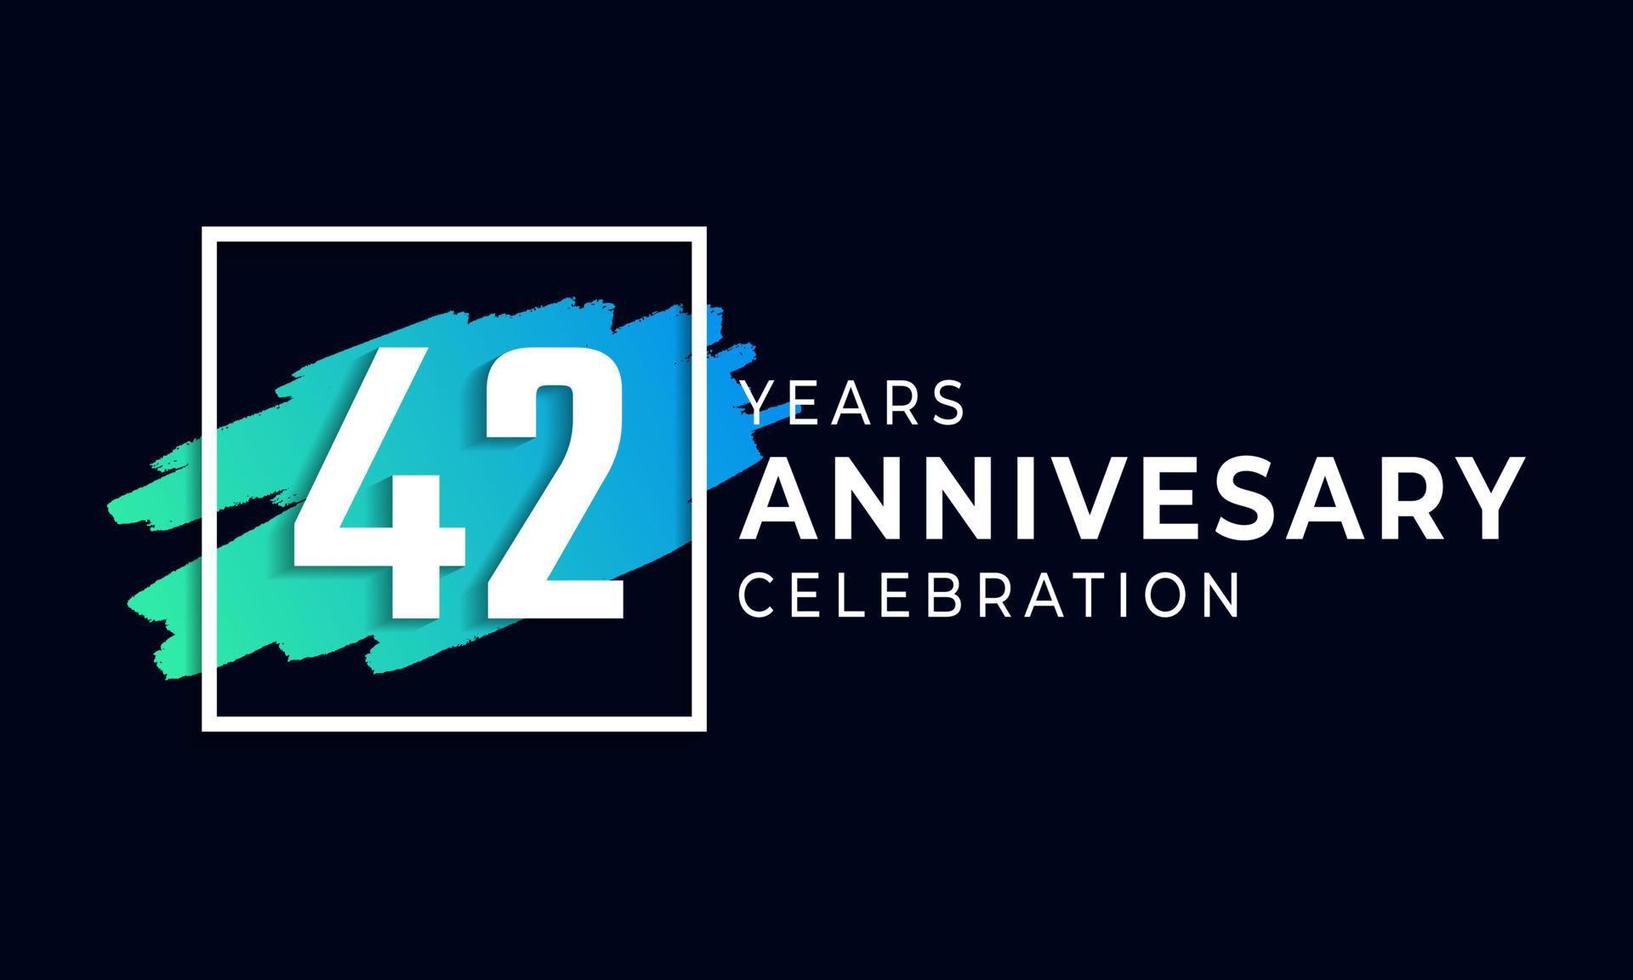 42-jarig jubileumfeest met blauwe borstel en vierkant symbool. gelukkige verjaardag groet viert gebeurtenis geïsoleerd op zwarte achtergrond vector